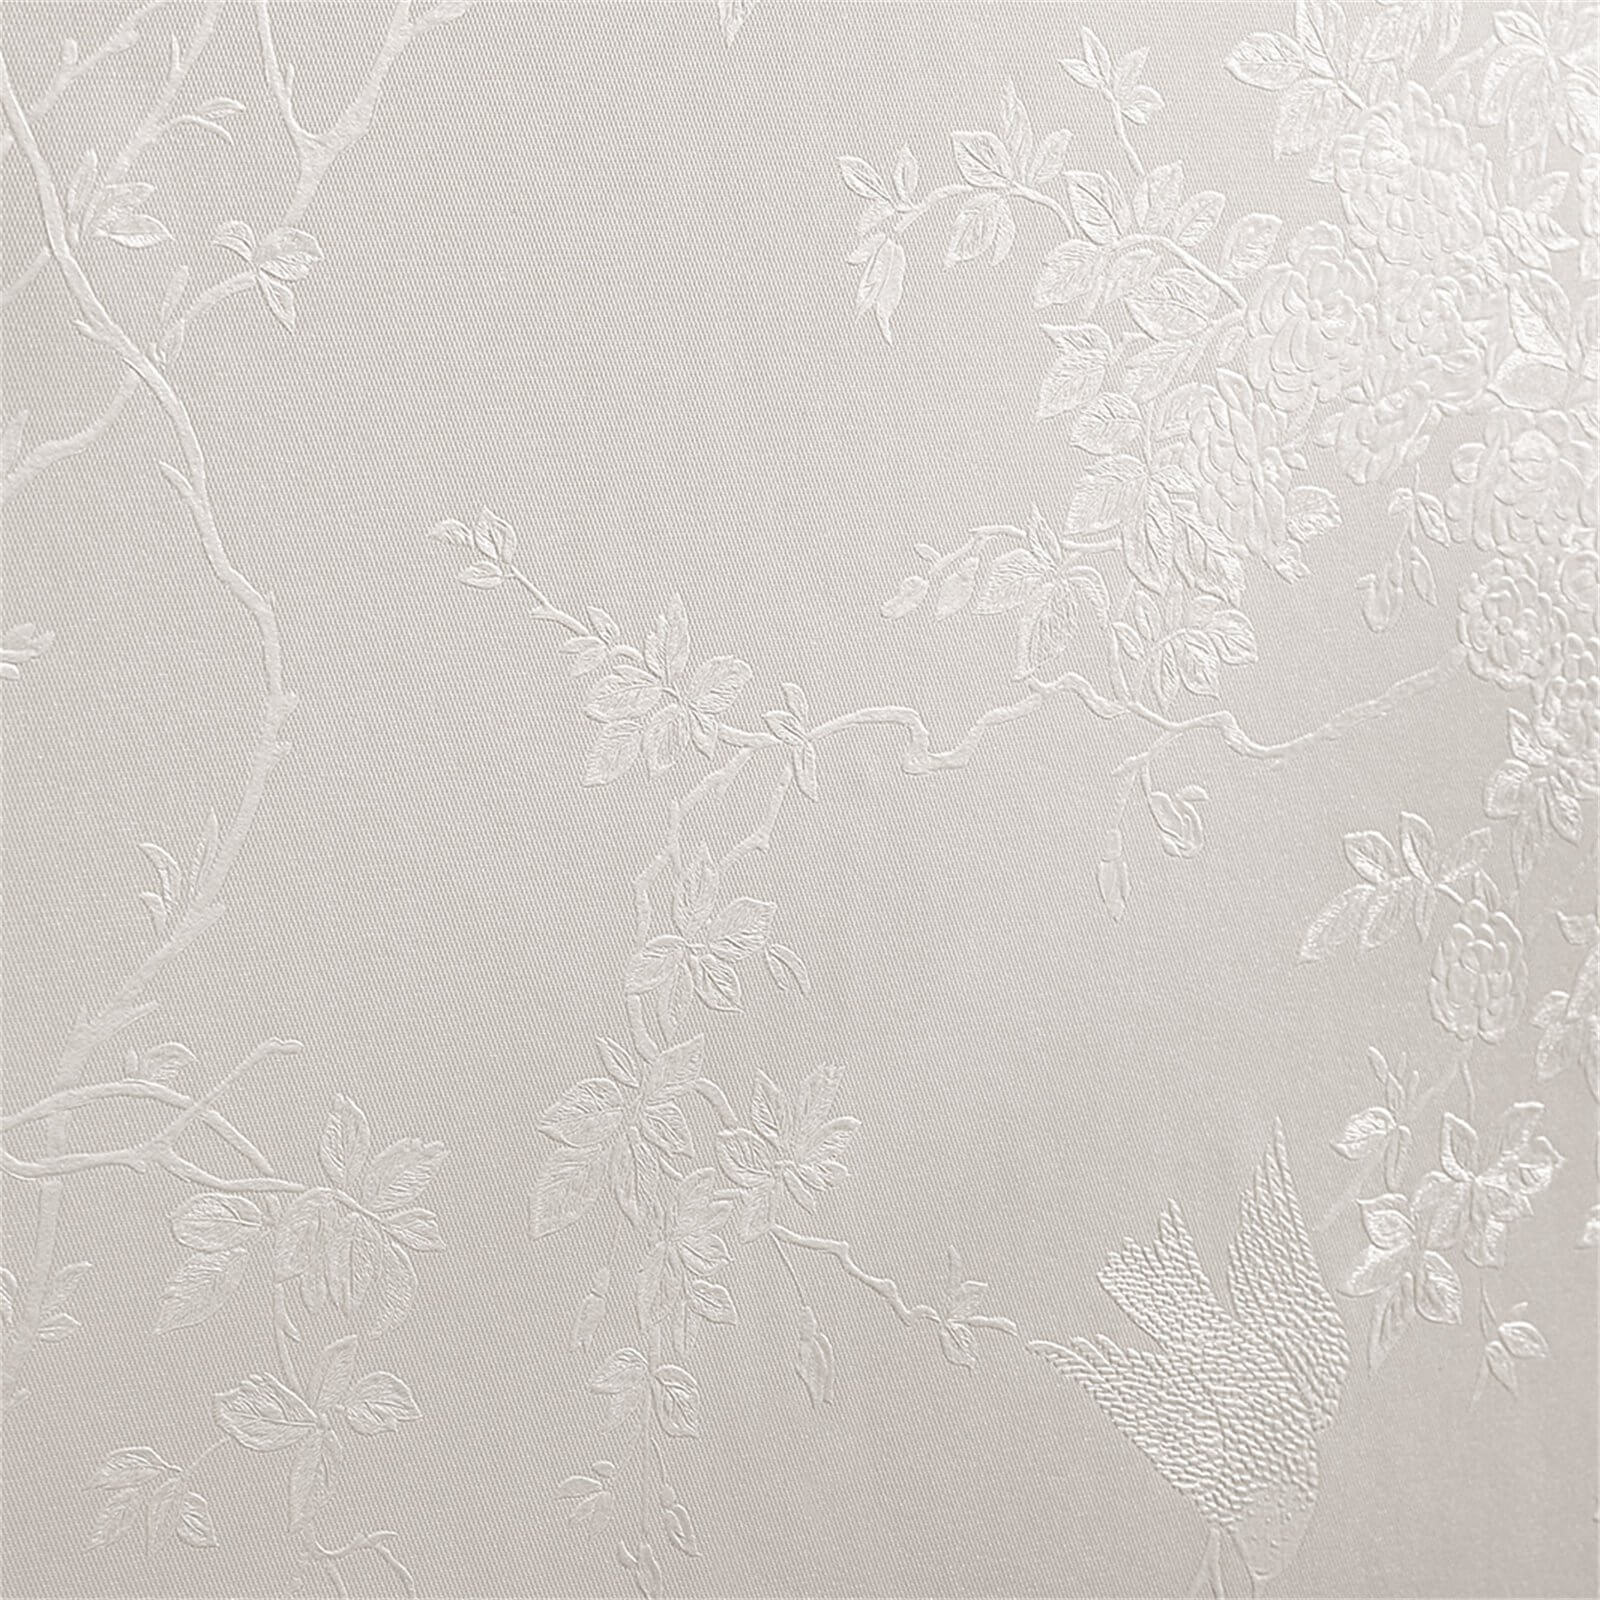 Superfresco Spring Blossom White Shimmer Wallpaper